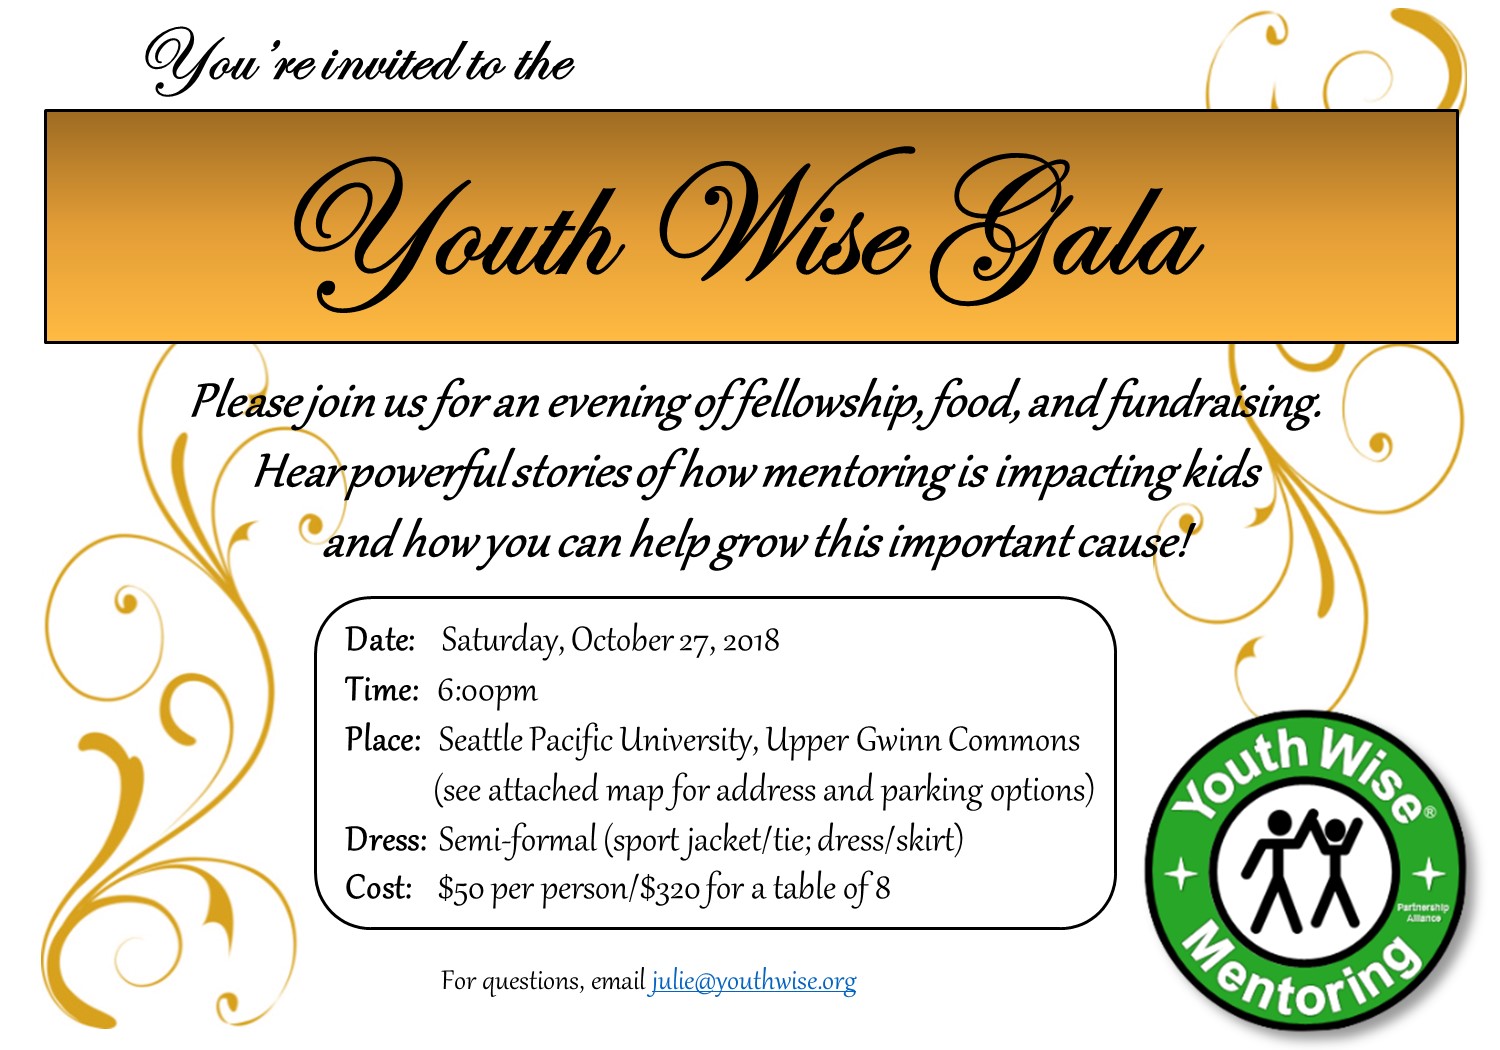 YW Gala Invitation